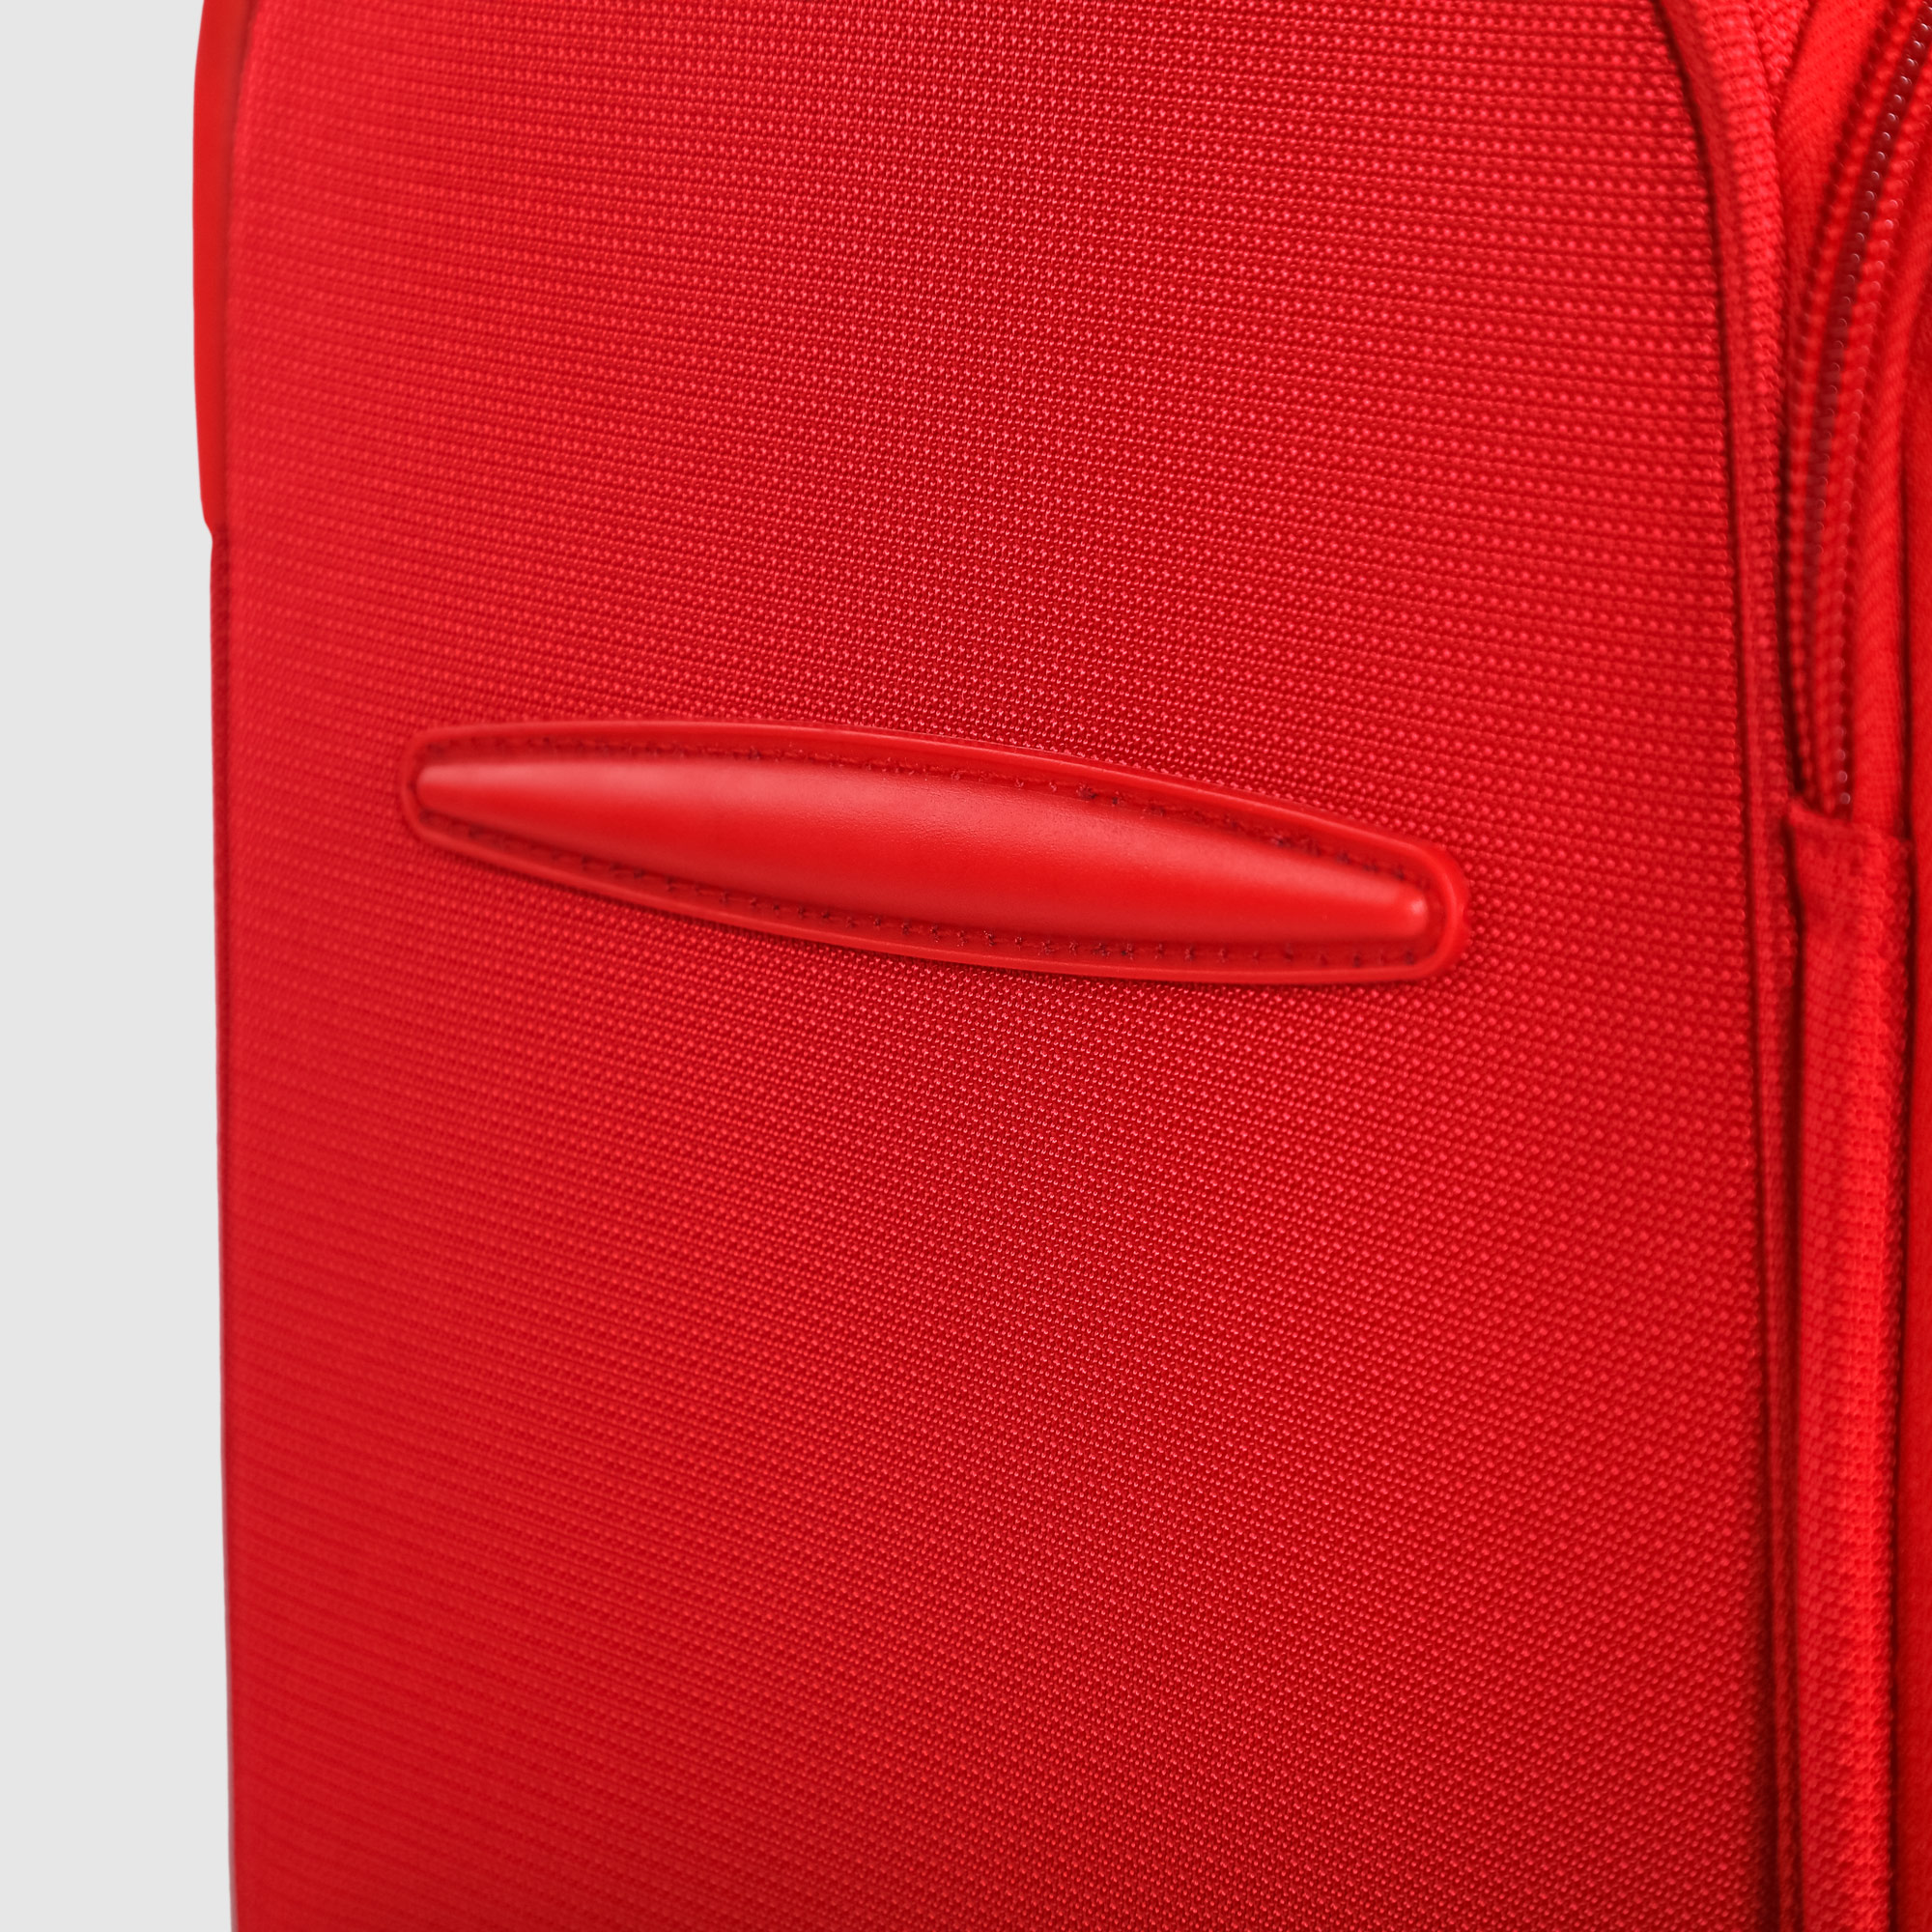 Чемодан красный Travelink ультралегкий S 36x22x55 см, размер S - фото 12